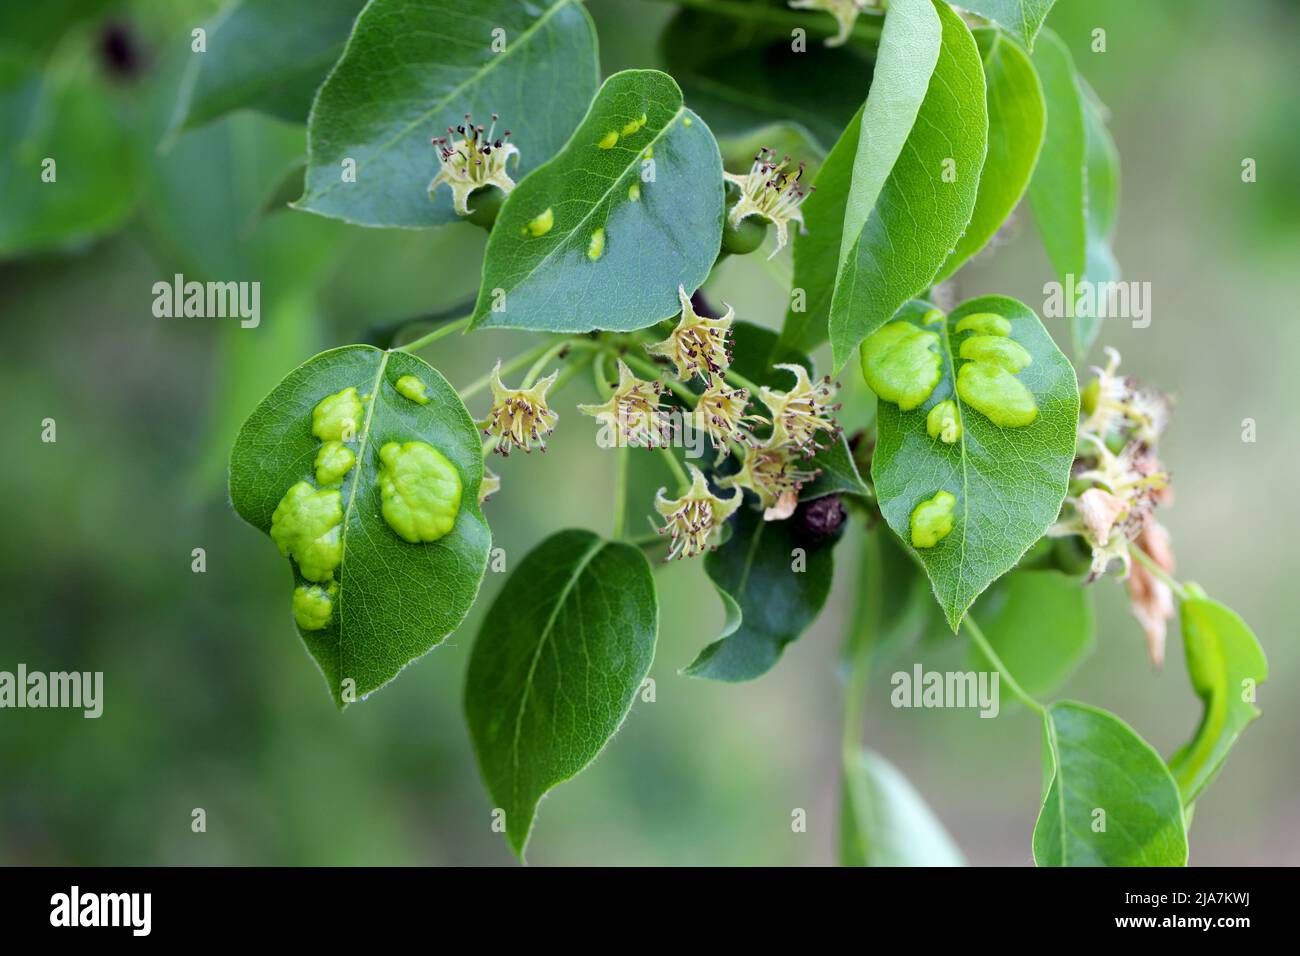 Symptome von Krankheiten oder Schädlingsinfektionen auf Birnenblättern in einem Obstgarten. Stockfoto